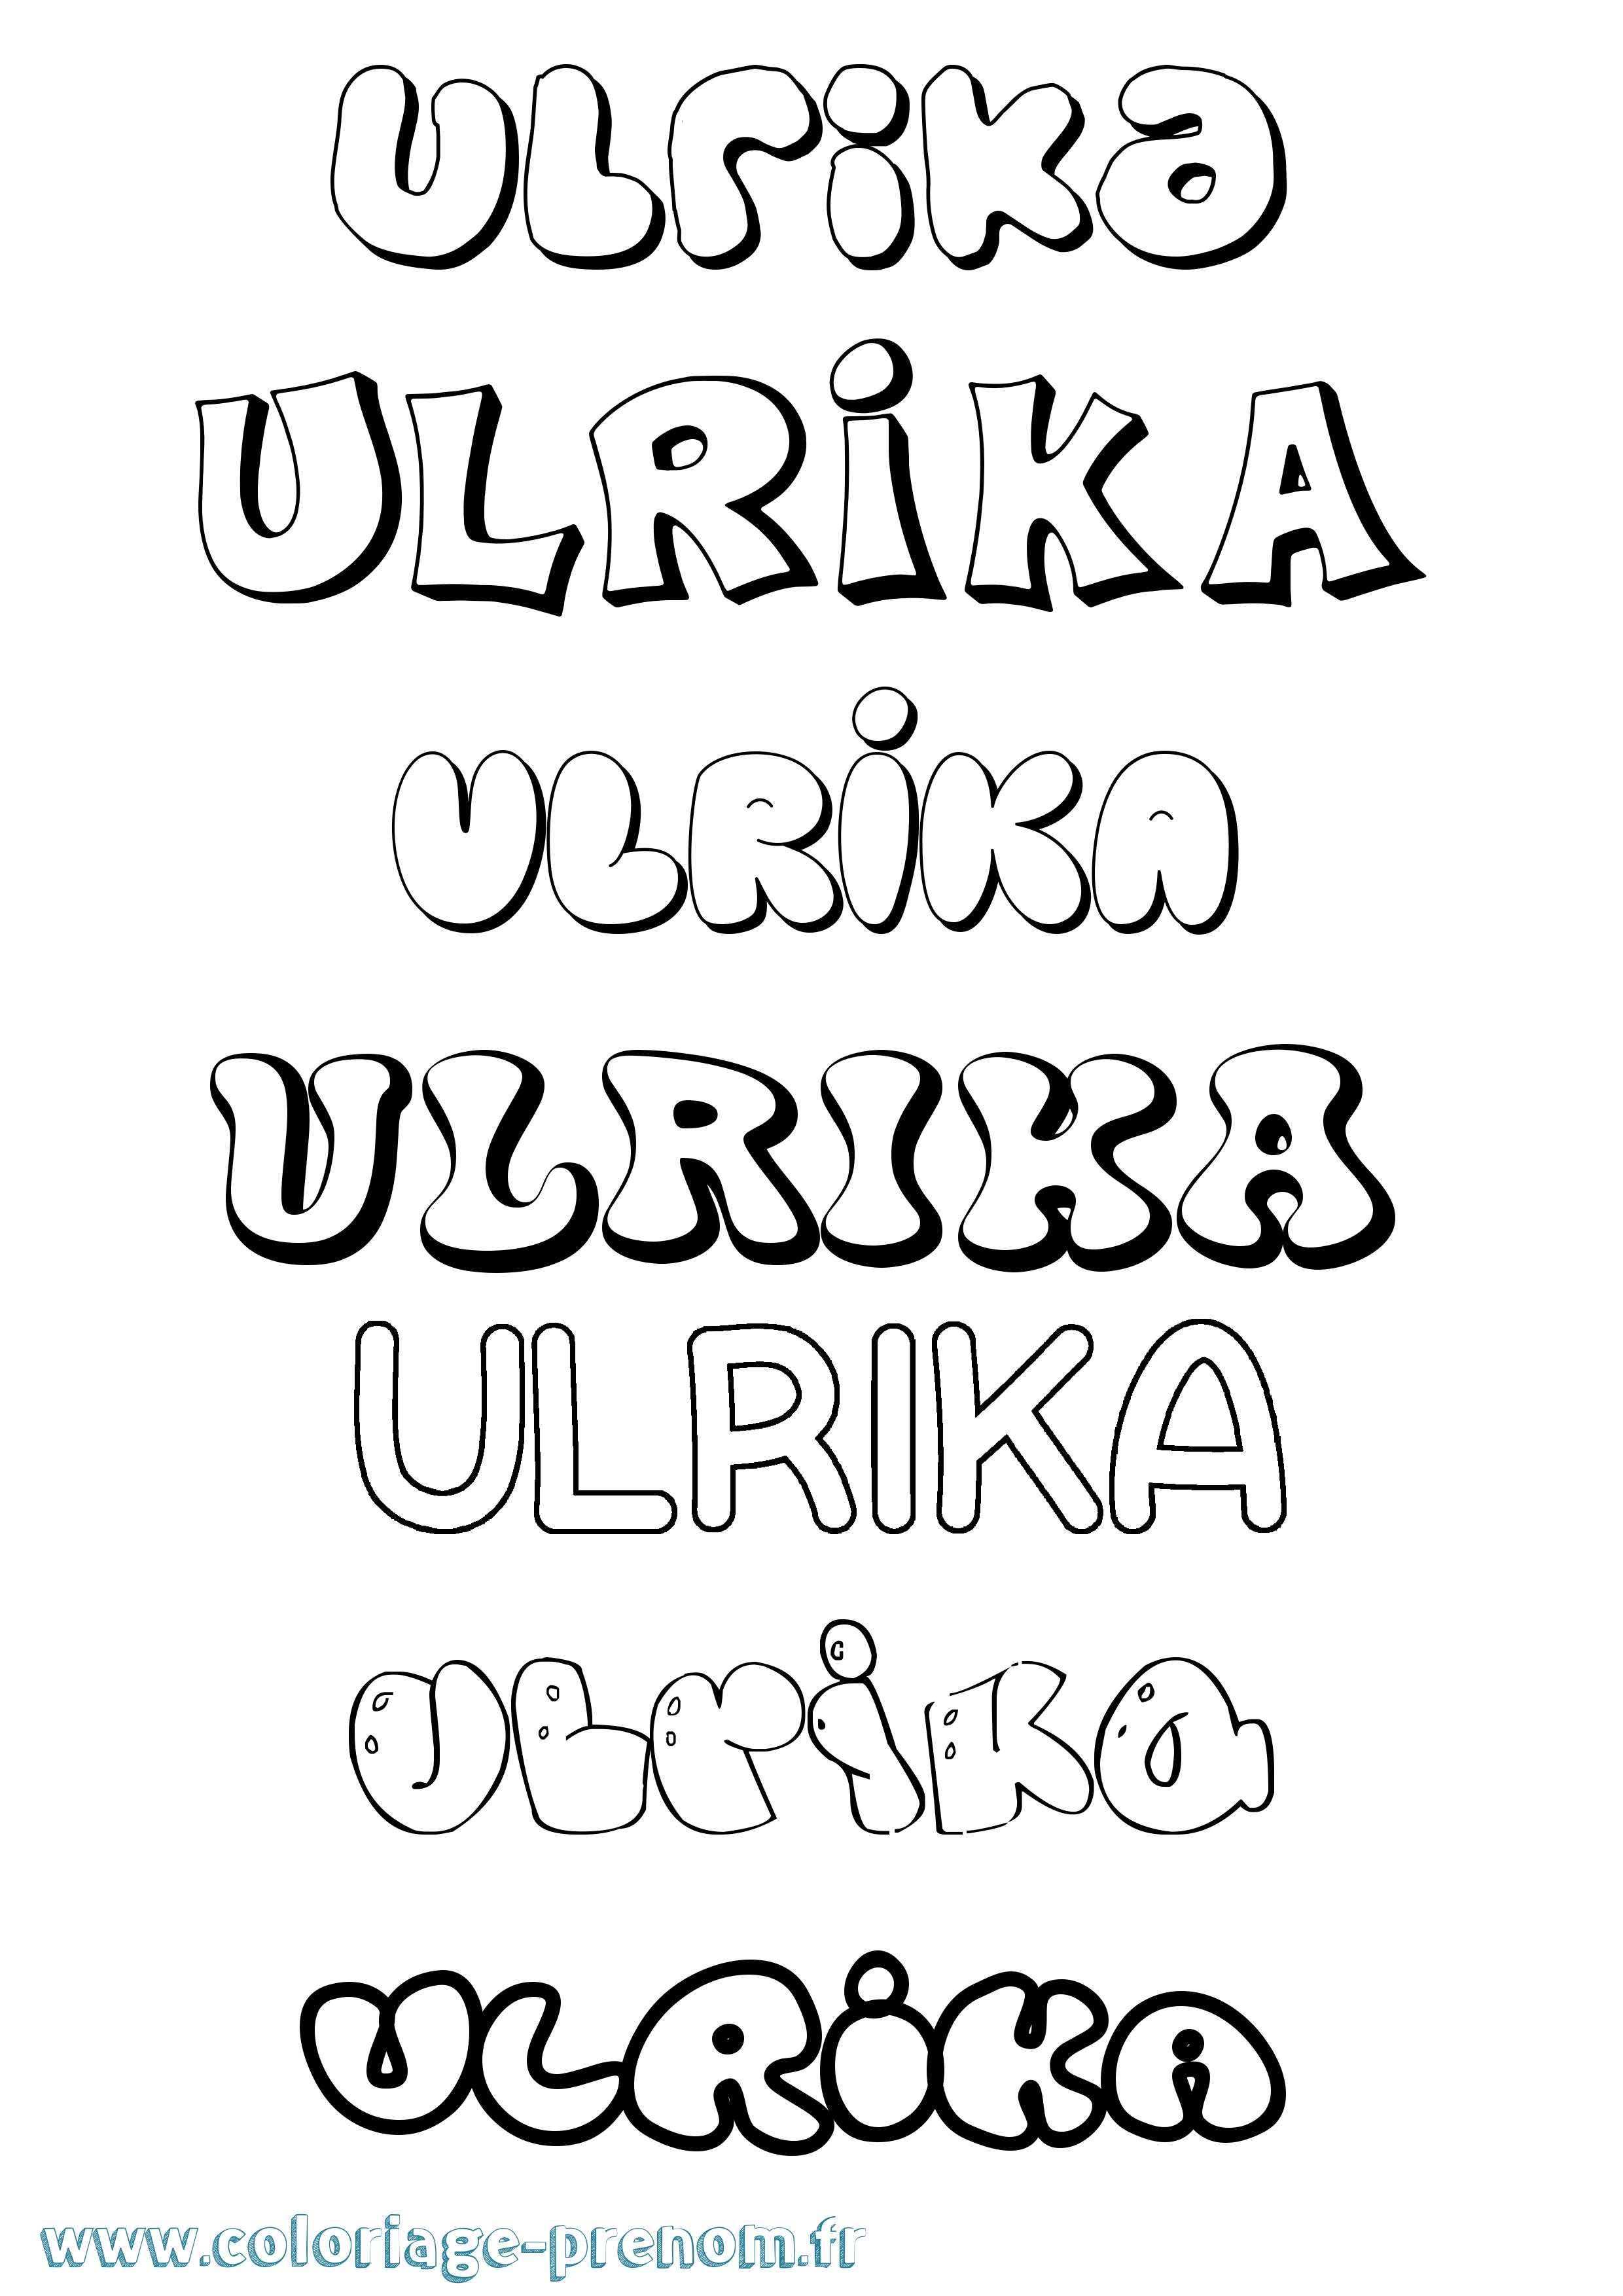 Coloriage prénom Ulrika Bubble